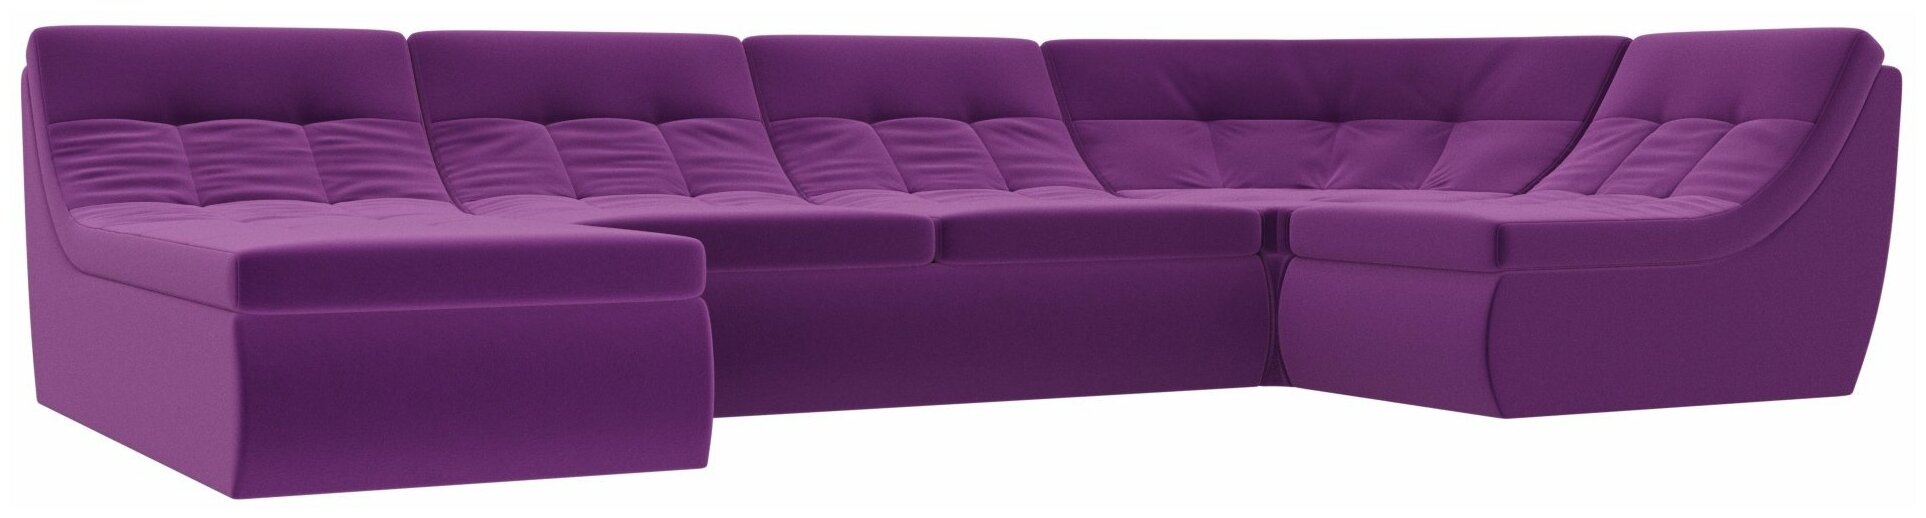 П-образный модульный диван Холидей, Микровельвет, Модель 101856